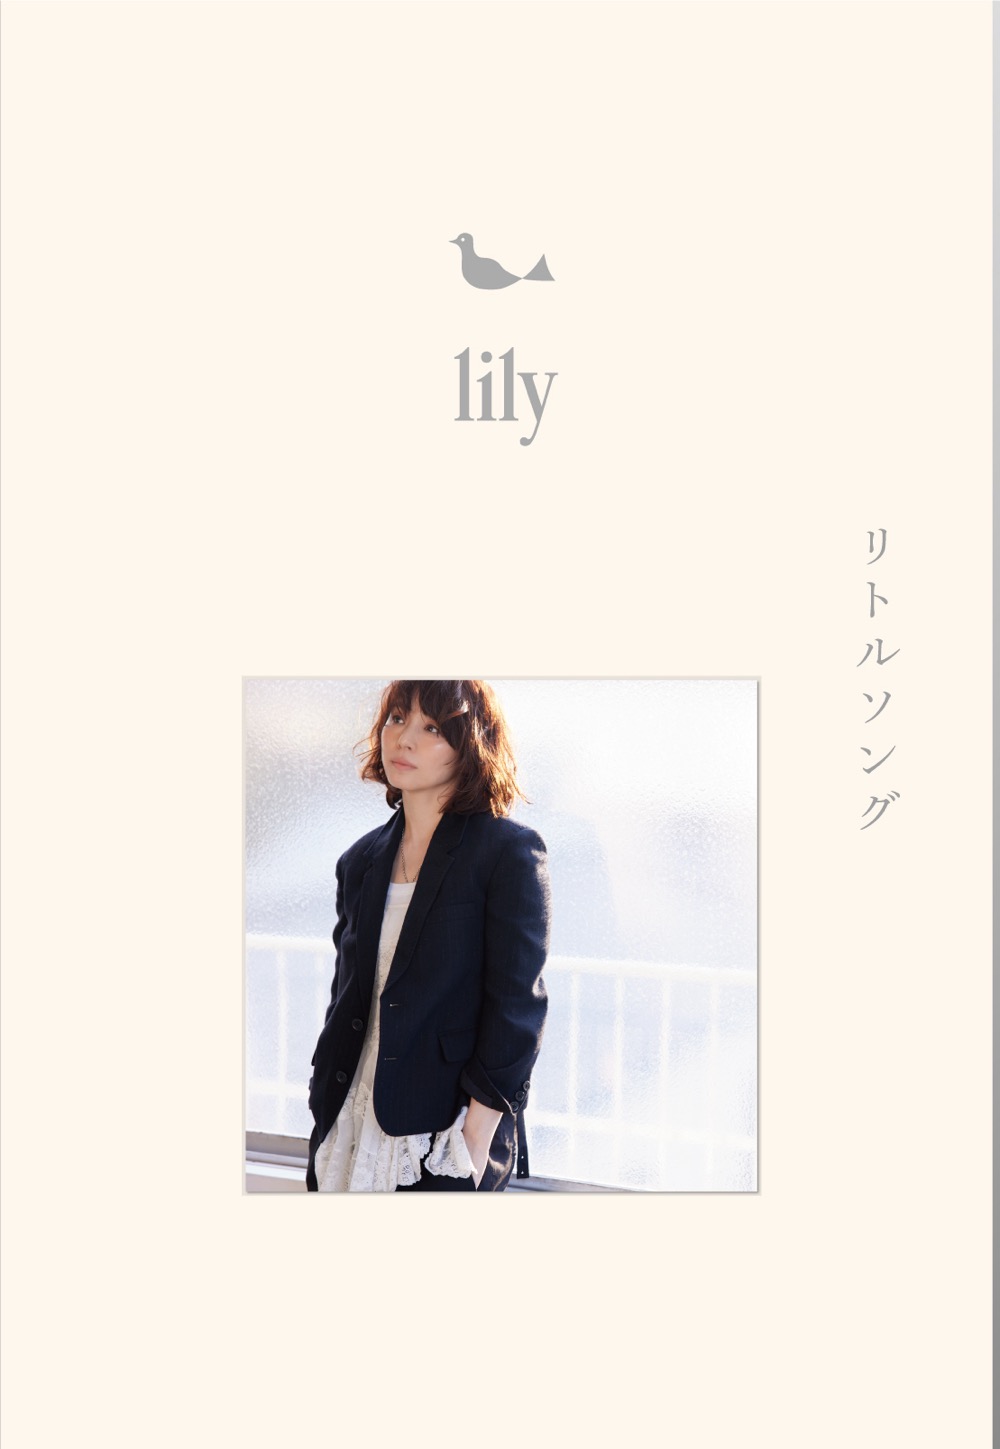 女優・石田ゆり子の音楽活動プロジェクト“lily”、初ミニアルバムのリリースが決定 - 画像一覧（1/3）